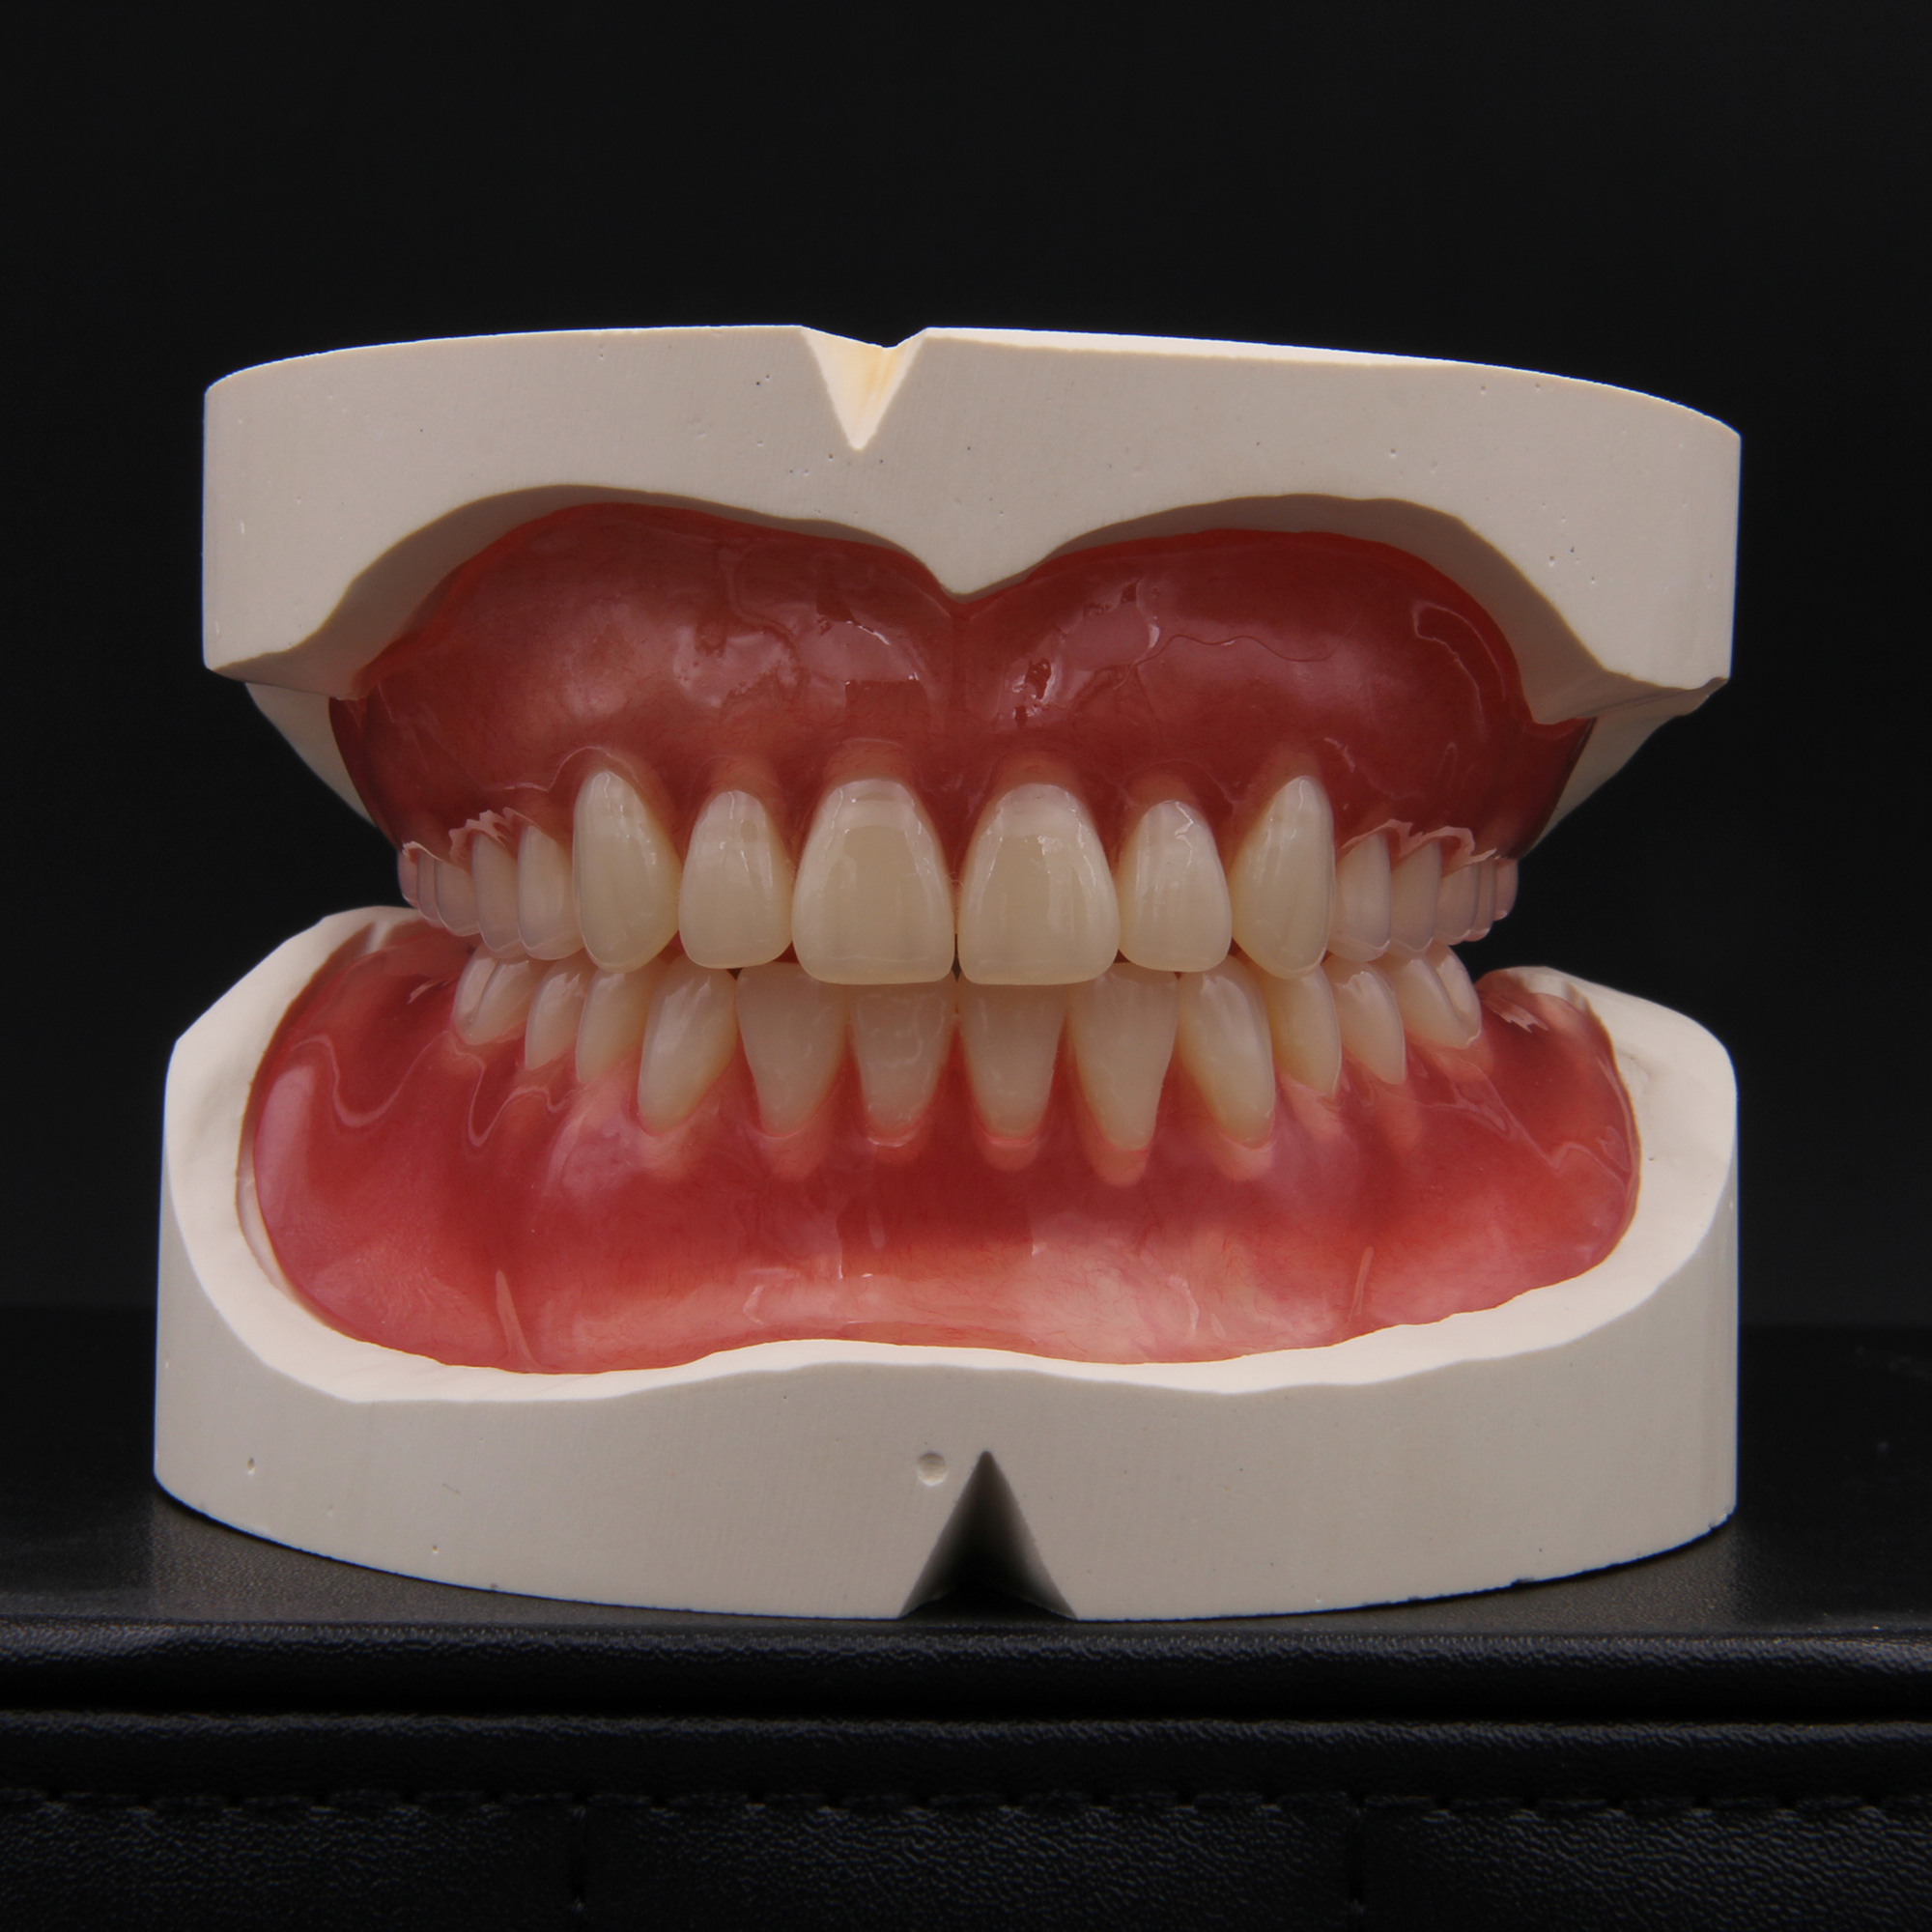 贝琼 SP-3 SUMMIT莎美特®三层色超硬质树脂牙（全口）28*1、上海贝琼、,L2 S2 M30 A2-牙e在线 牙科综合性服务型电商平台